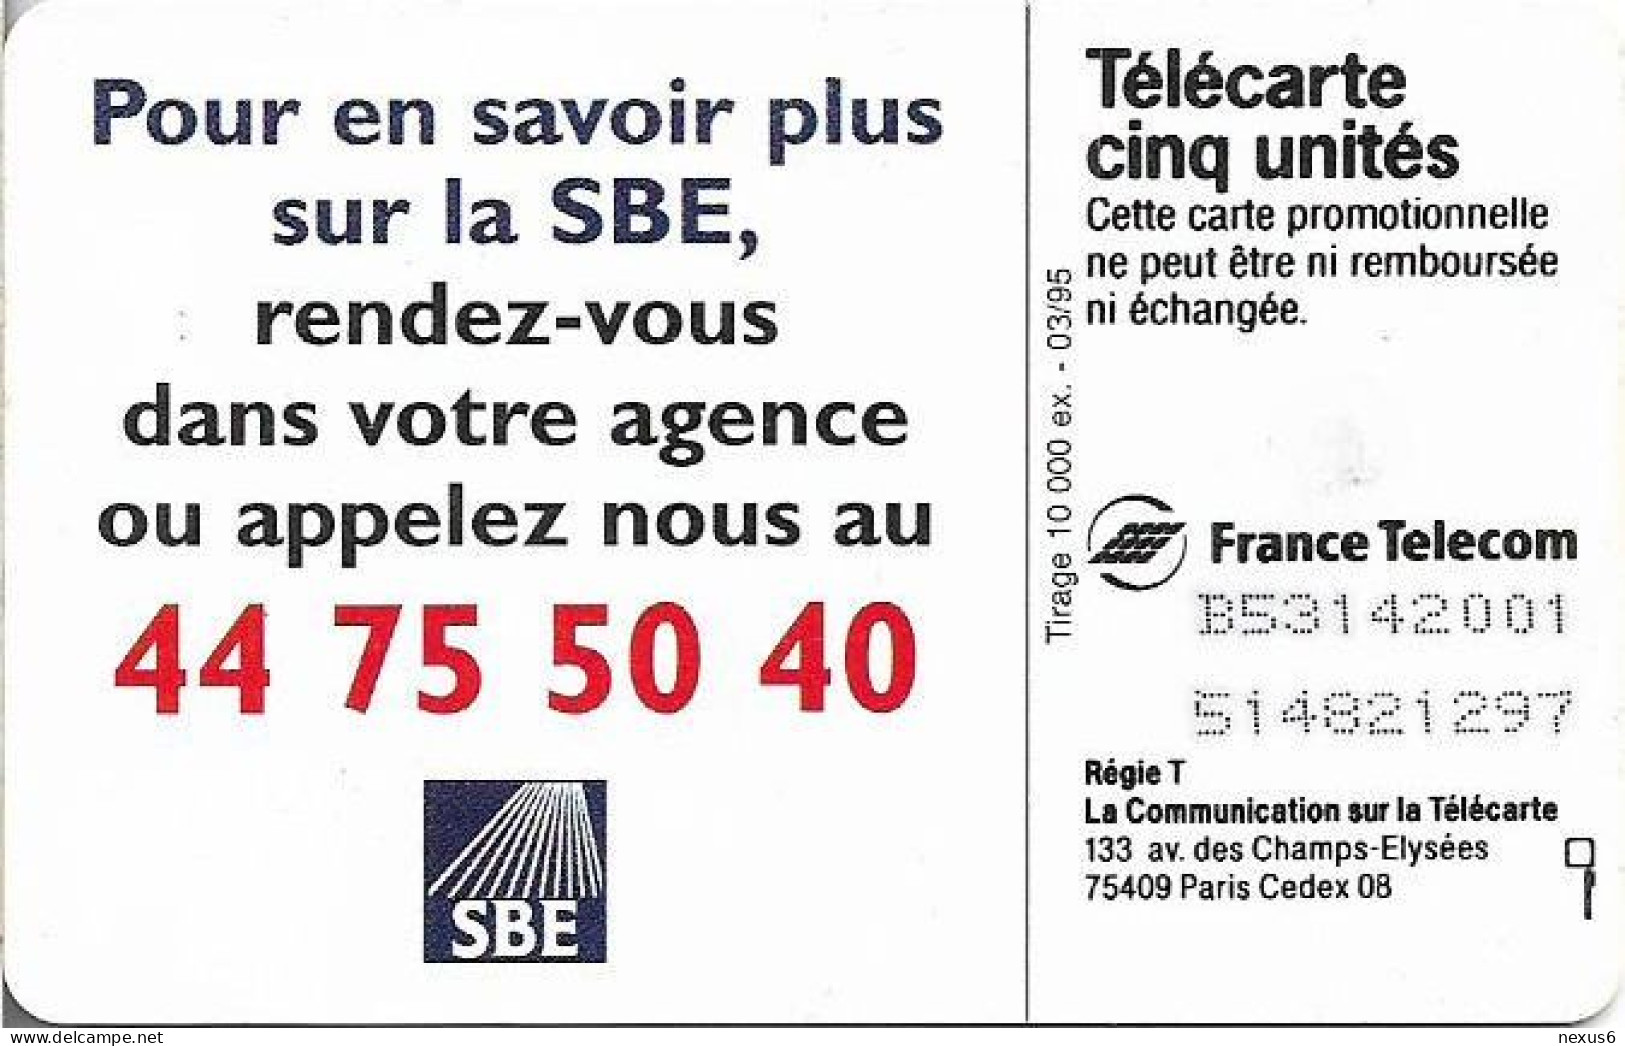 France - Les Cinq Unites - SBE - Gn141 - 03.1995, 5Units, 10.000ex, Used - 5 Units